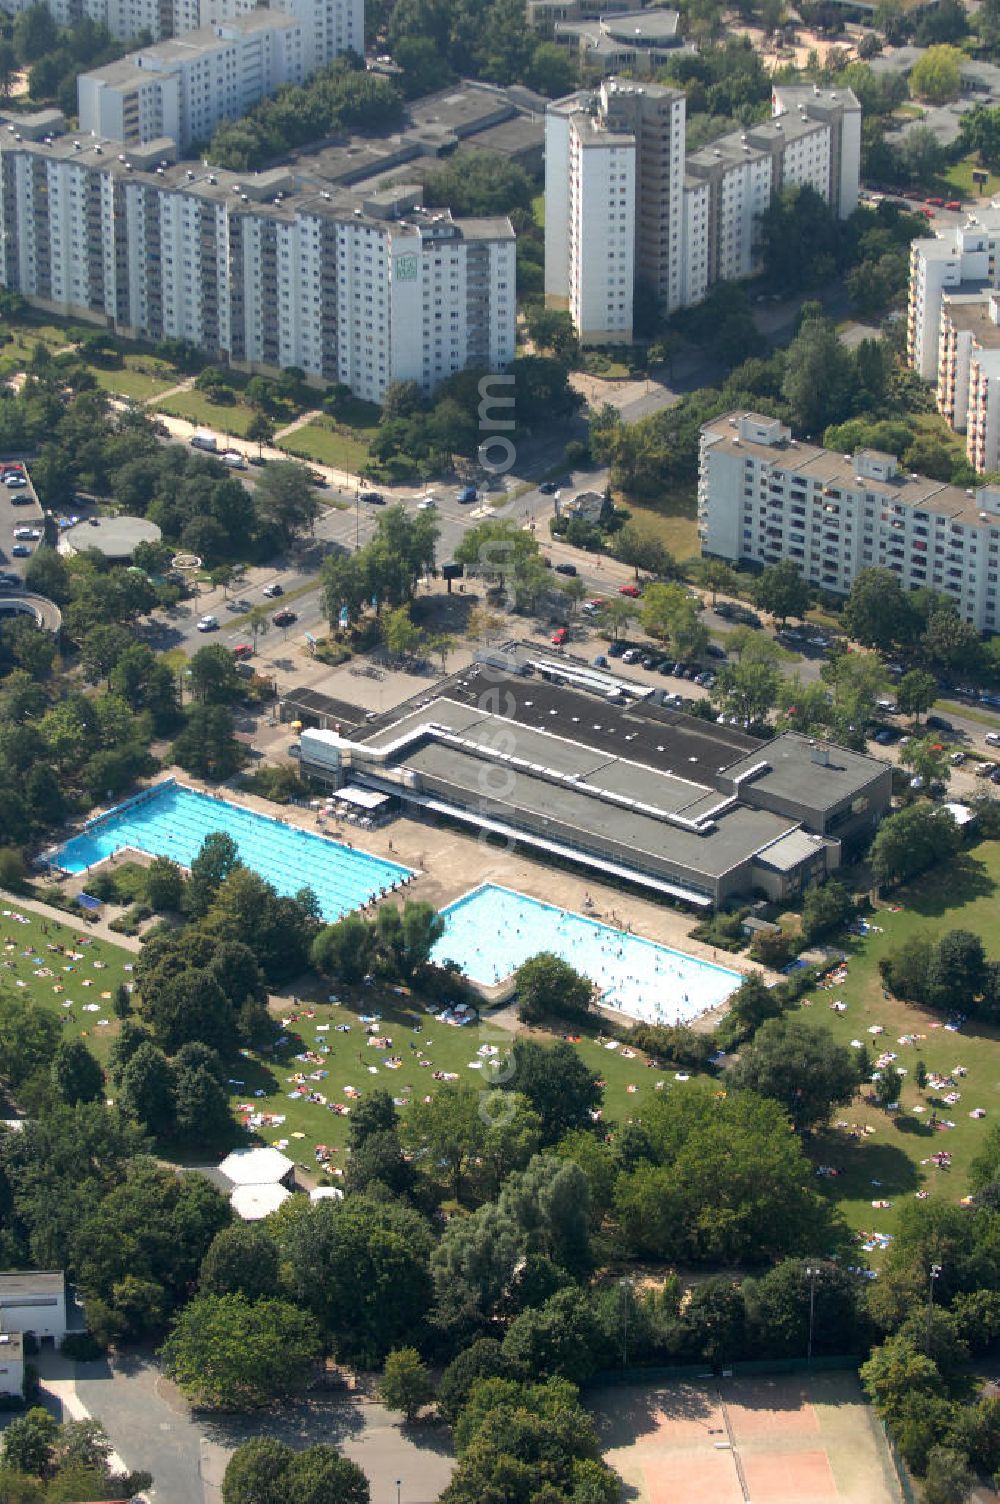 Aerial photograph Berlin - Blick auf das Kombibad Gropiusstadt. Das Schwimbad besteht beidermaßen aus einem Hallenbad und einem Freibad. Kontakt: Lipschitzallee 27-33, 12351 Berlin, Tel. 030/ 60 97 19 12